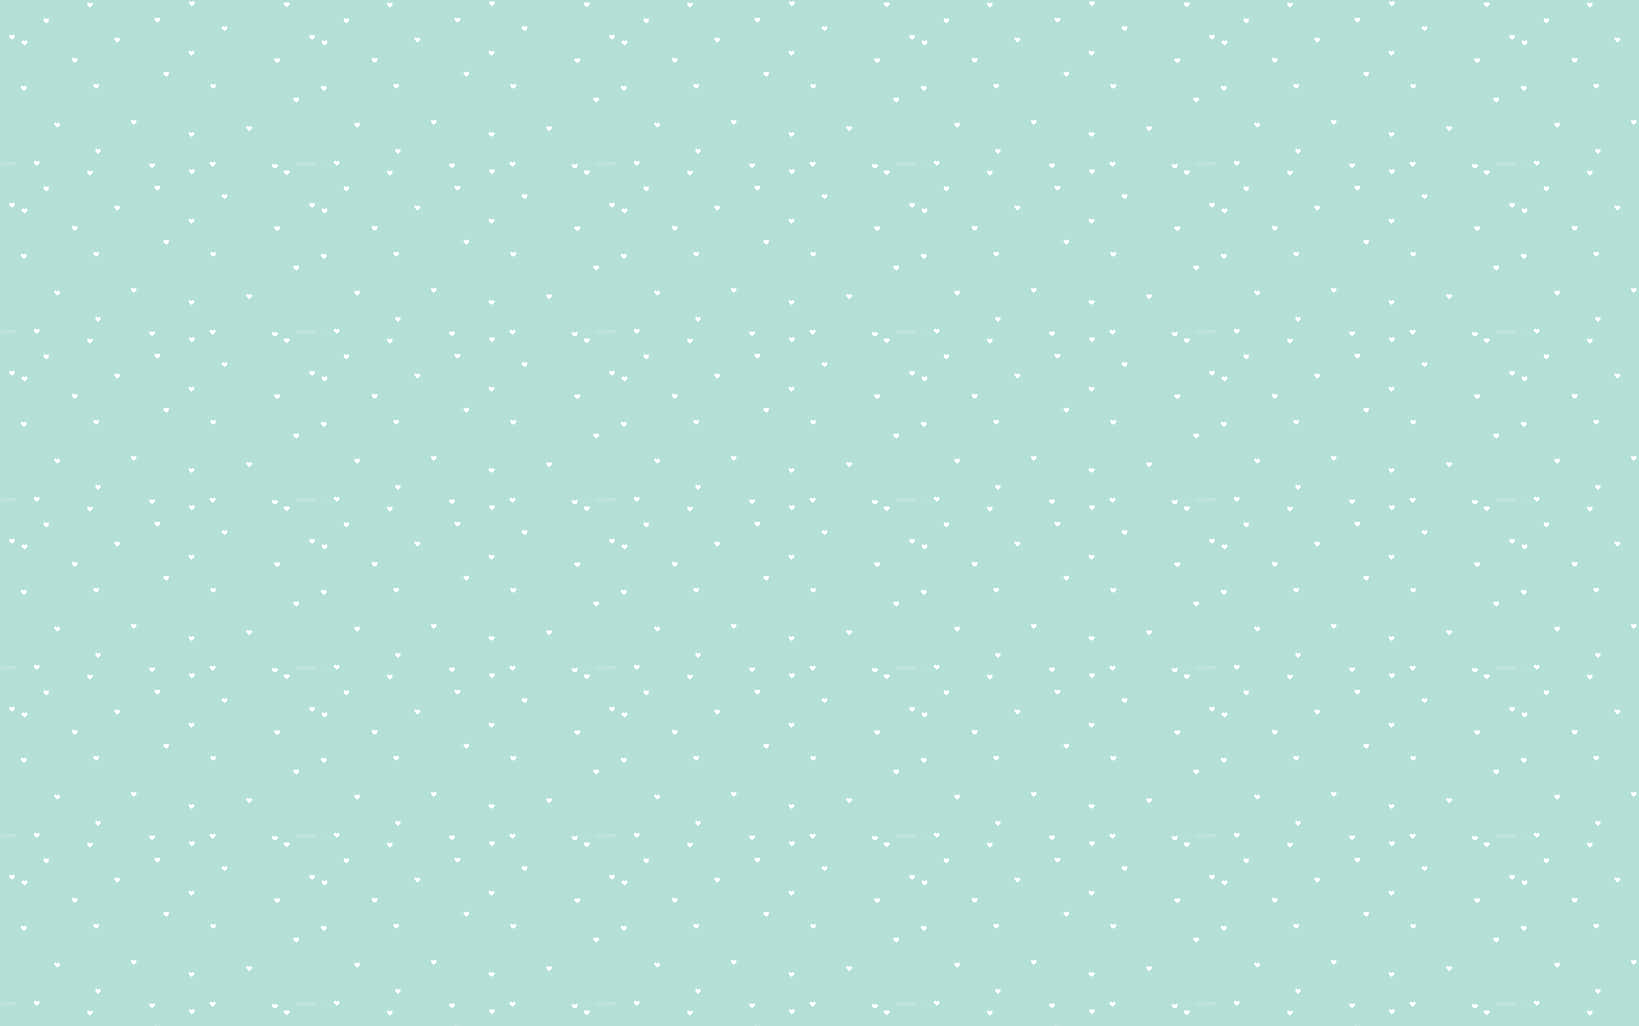 Pequeñoslunares Blancos En Un Fondo Estético De Color Azul Claro. Fondo de pantalla